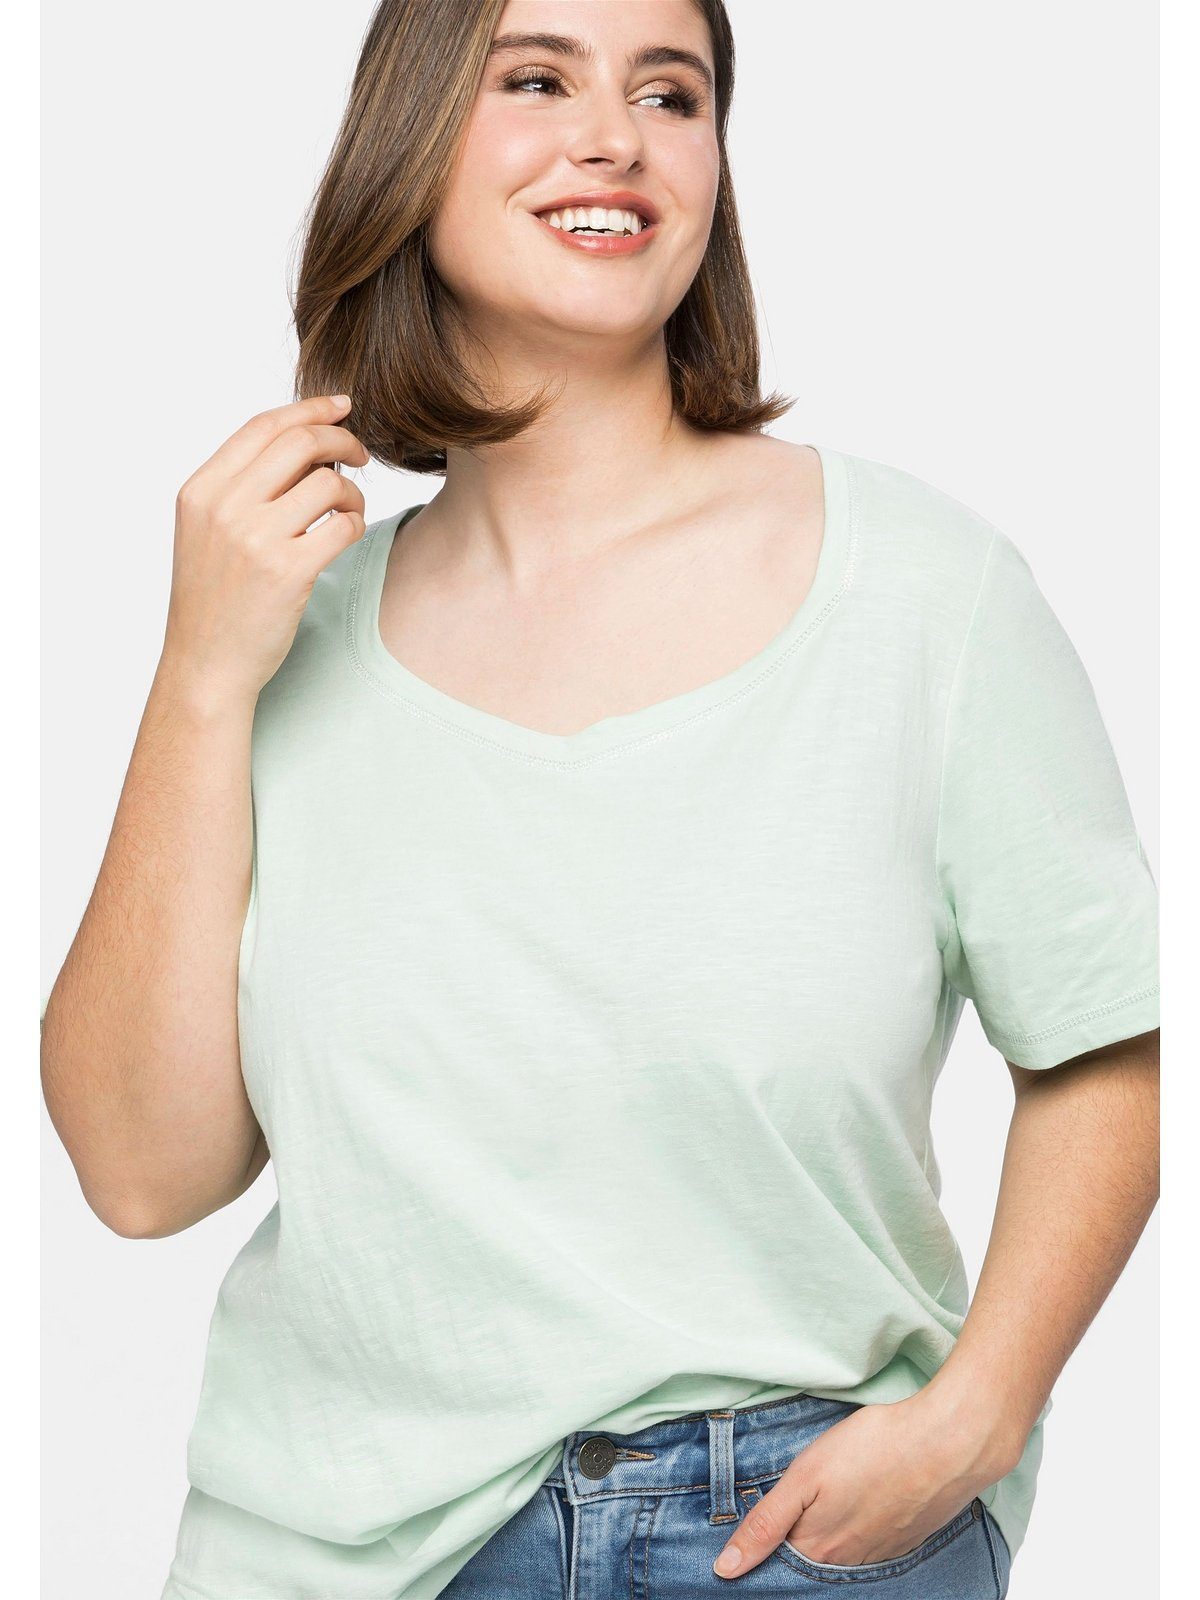 Größen silberfarbenen Ärmel Sheego Ziernähte mit Ziernähten, und Große an T-Shirt Silberfarbenen Ausschnitt